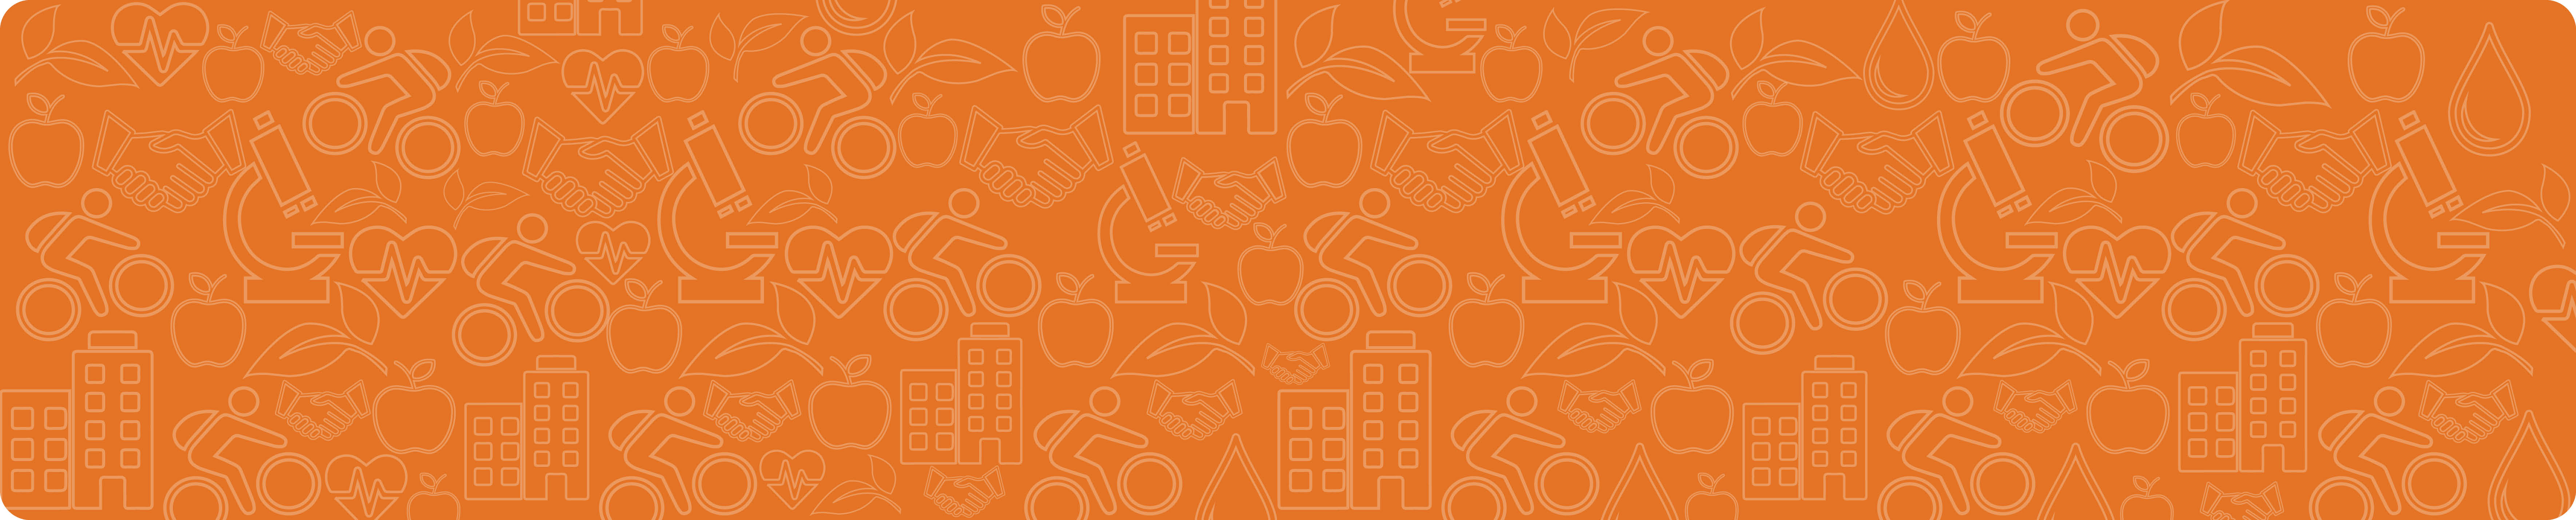 Sustainability icons with orange background